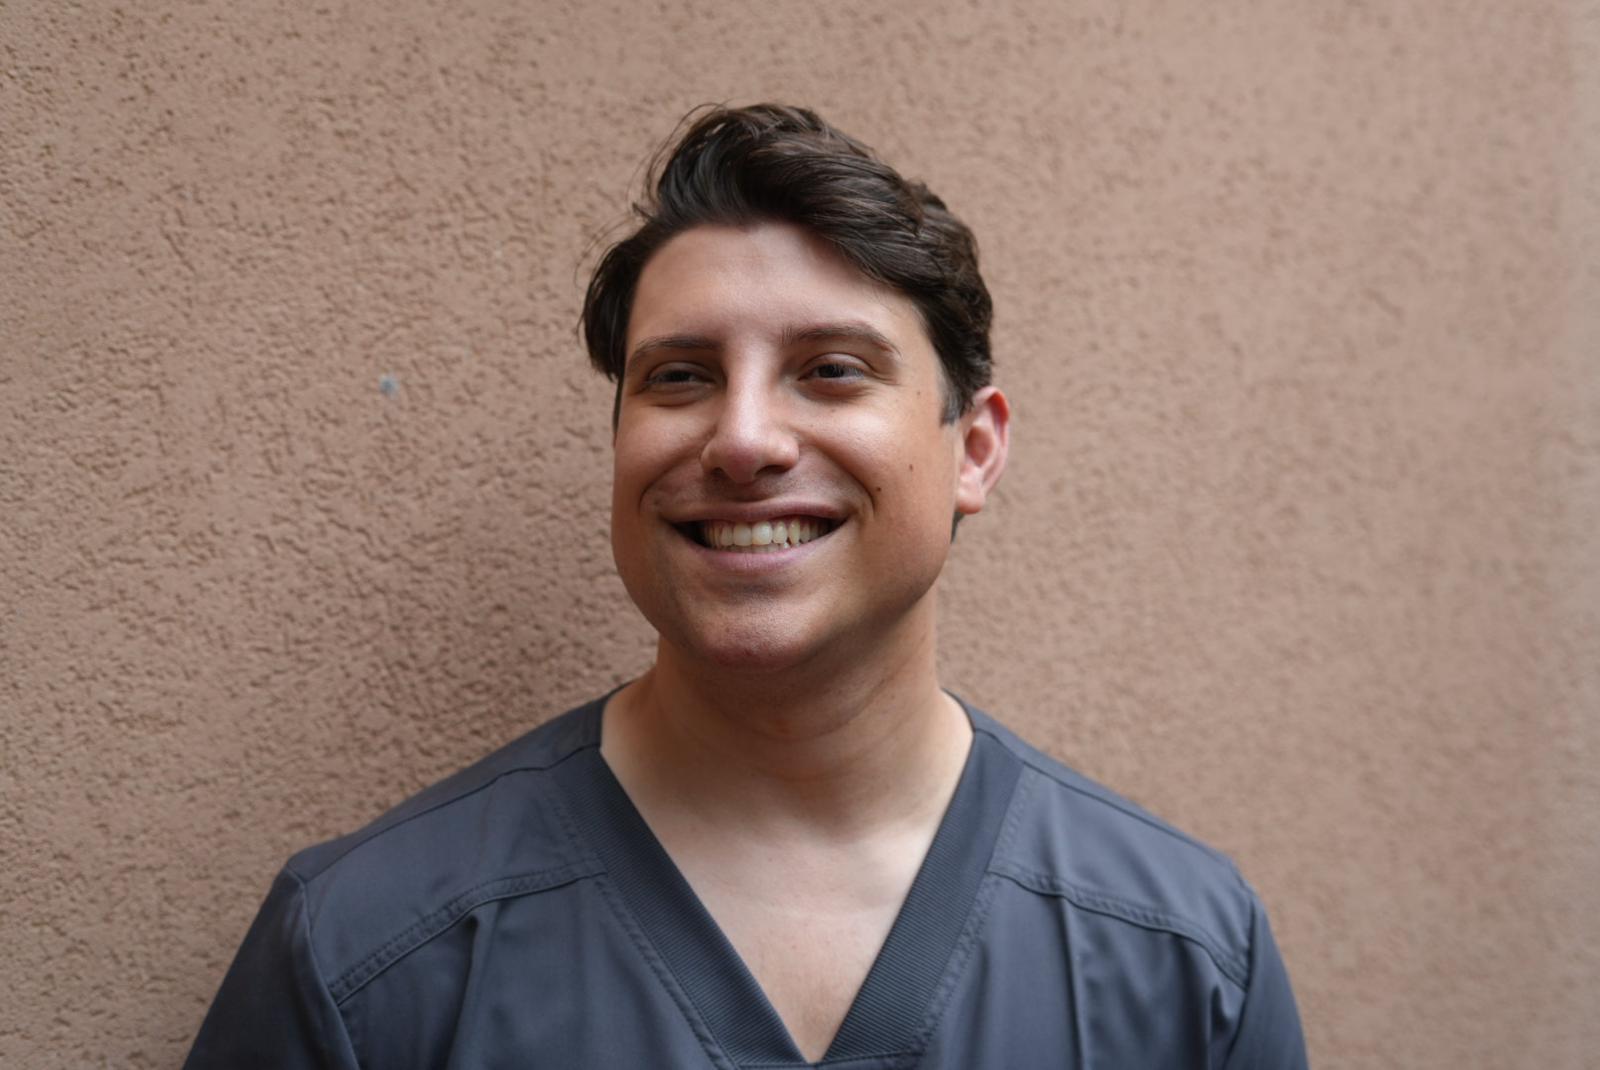 Antonio Franco parla di medicina ed estate: i consigli del chirurgo dei vip